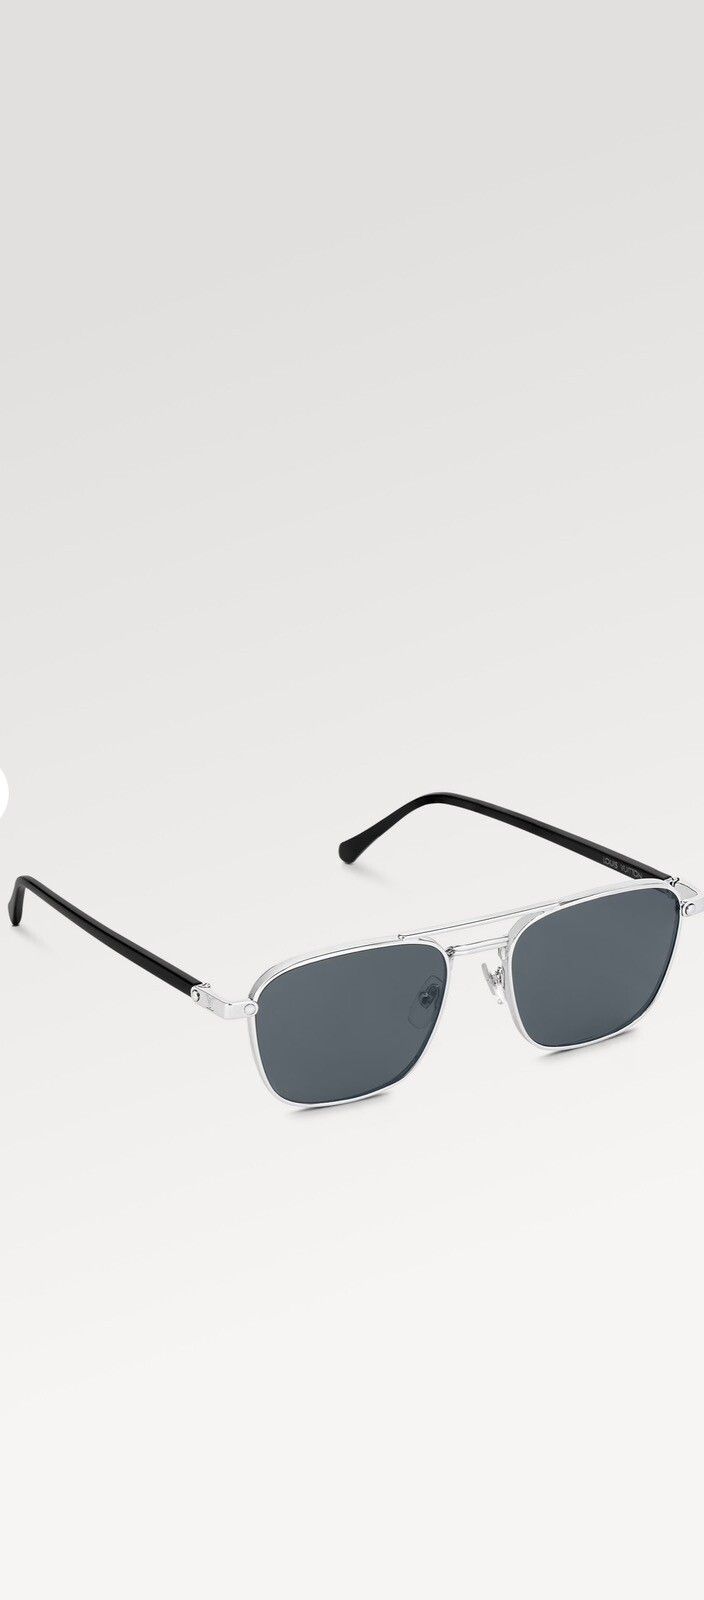 Louis Vuitton Black/Black Z1414W Square Match Sunglasses Louis Vuitton